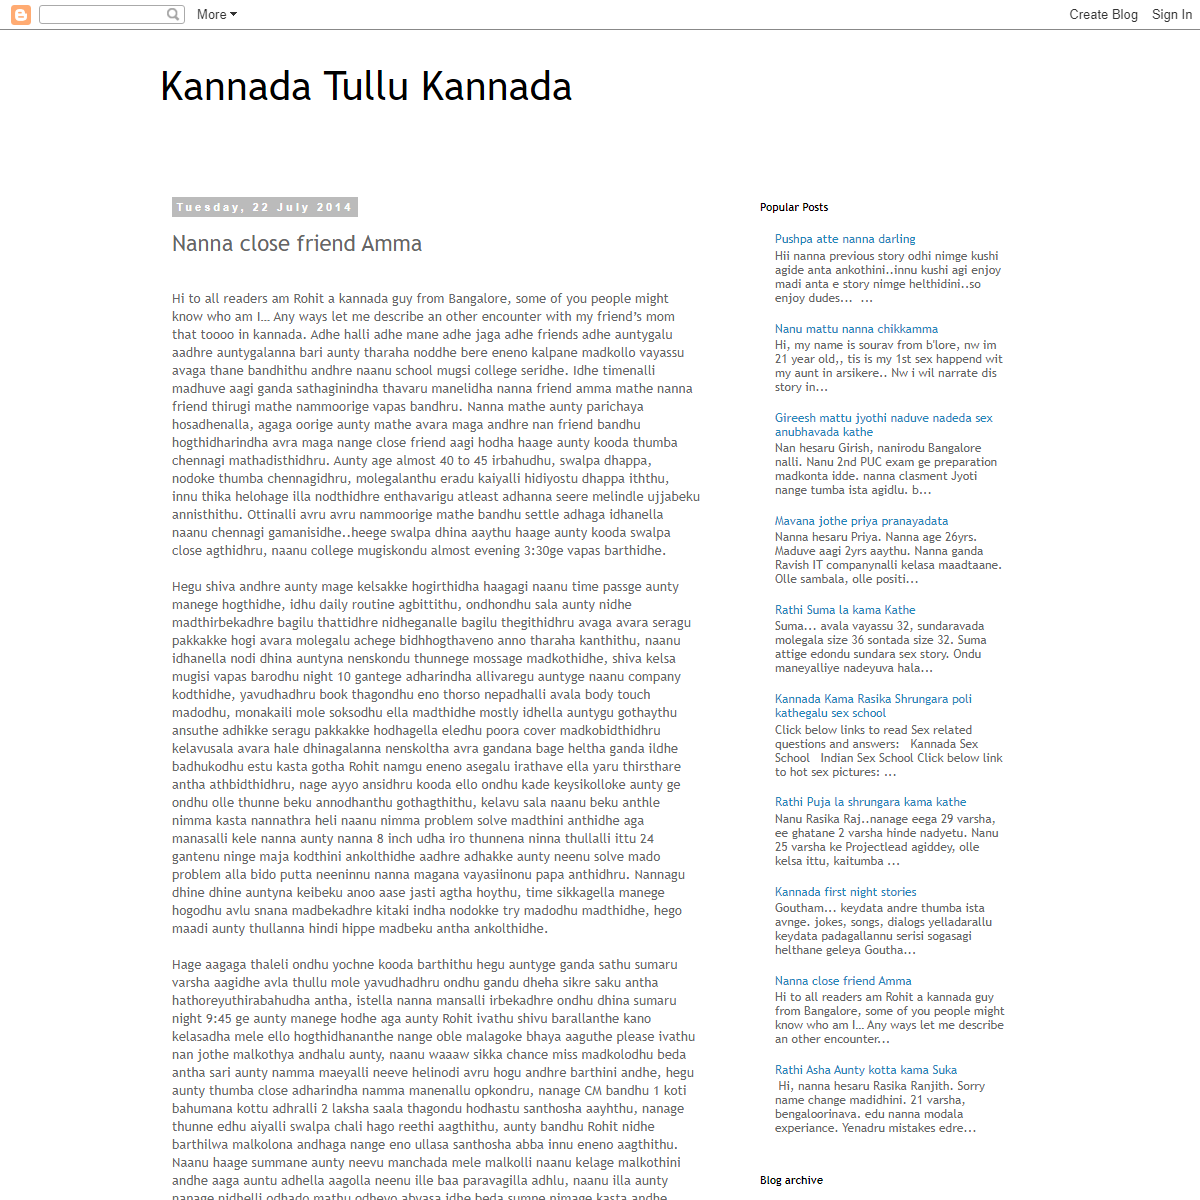 A complete backup of https://kannadatullukannada.blogspot.com/2014/07/nanna-close-friend-amma.html